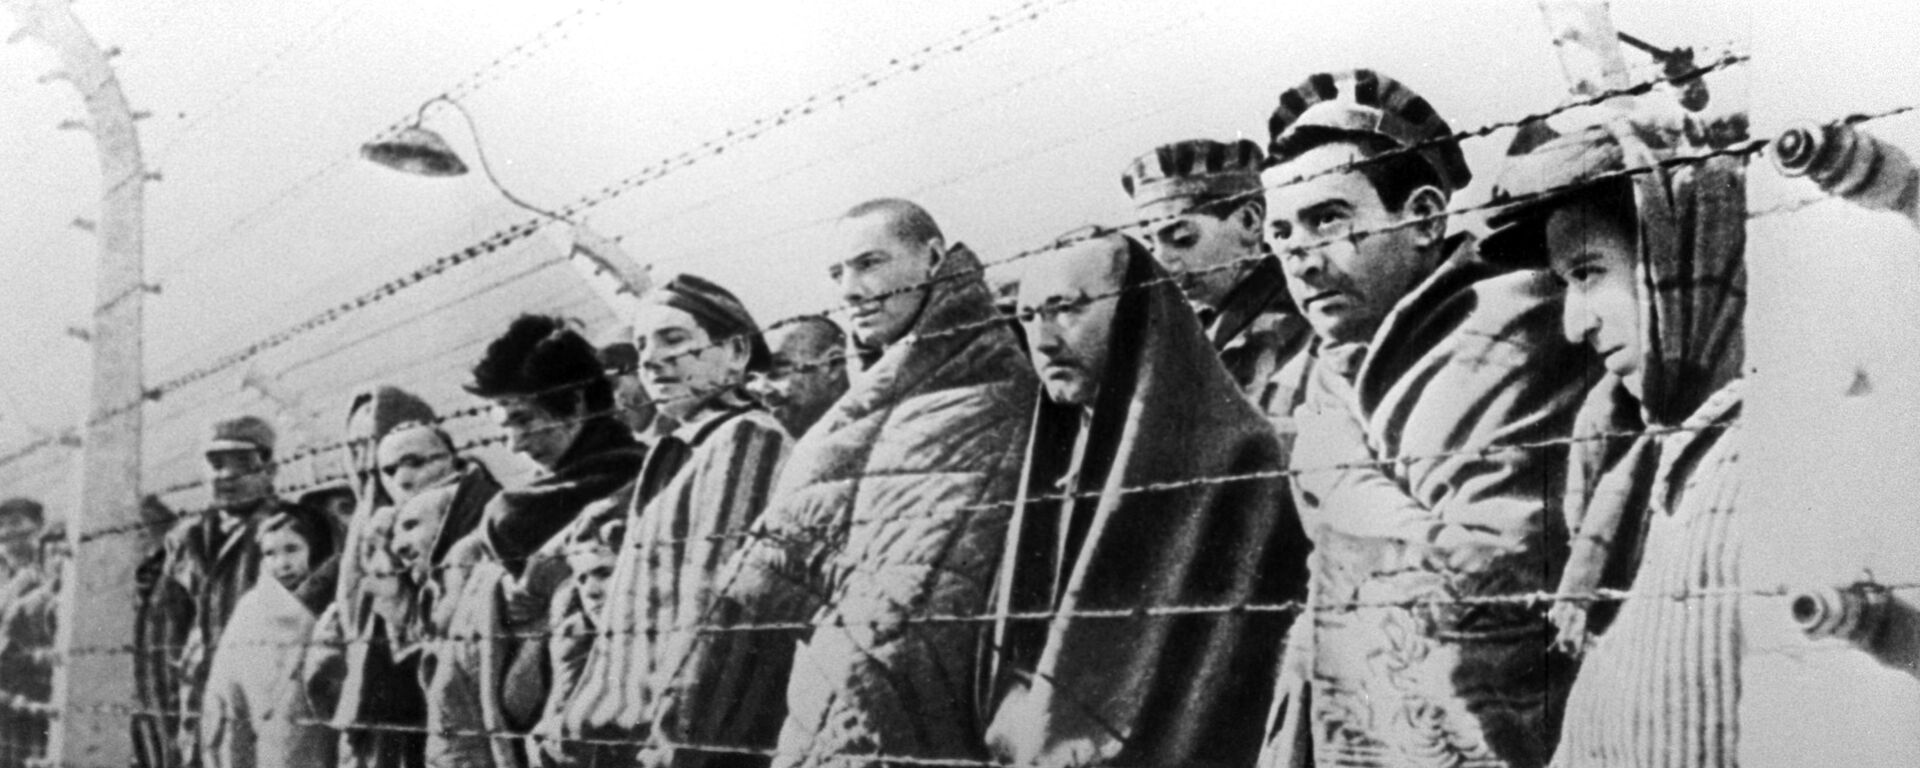 Узники концентрационного лагеря Освенцим, освобожденные войсками Красной армии в январе 1945 года - Sputnik Узбекистан, 1920, 13.10.2020